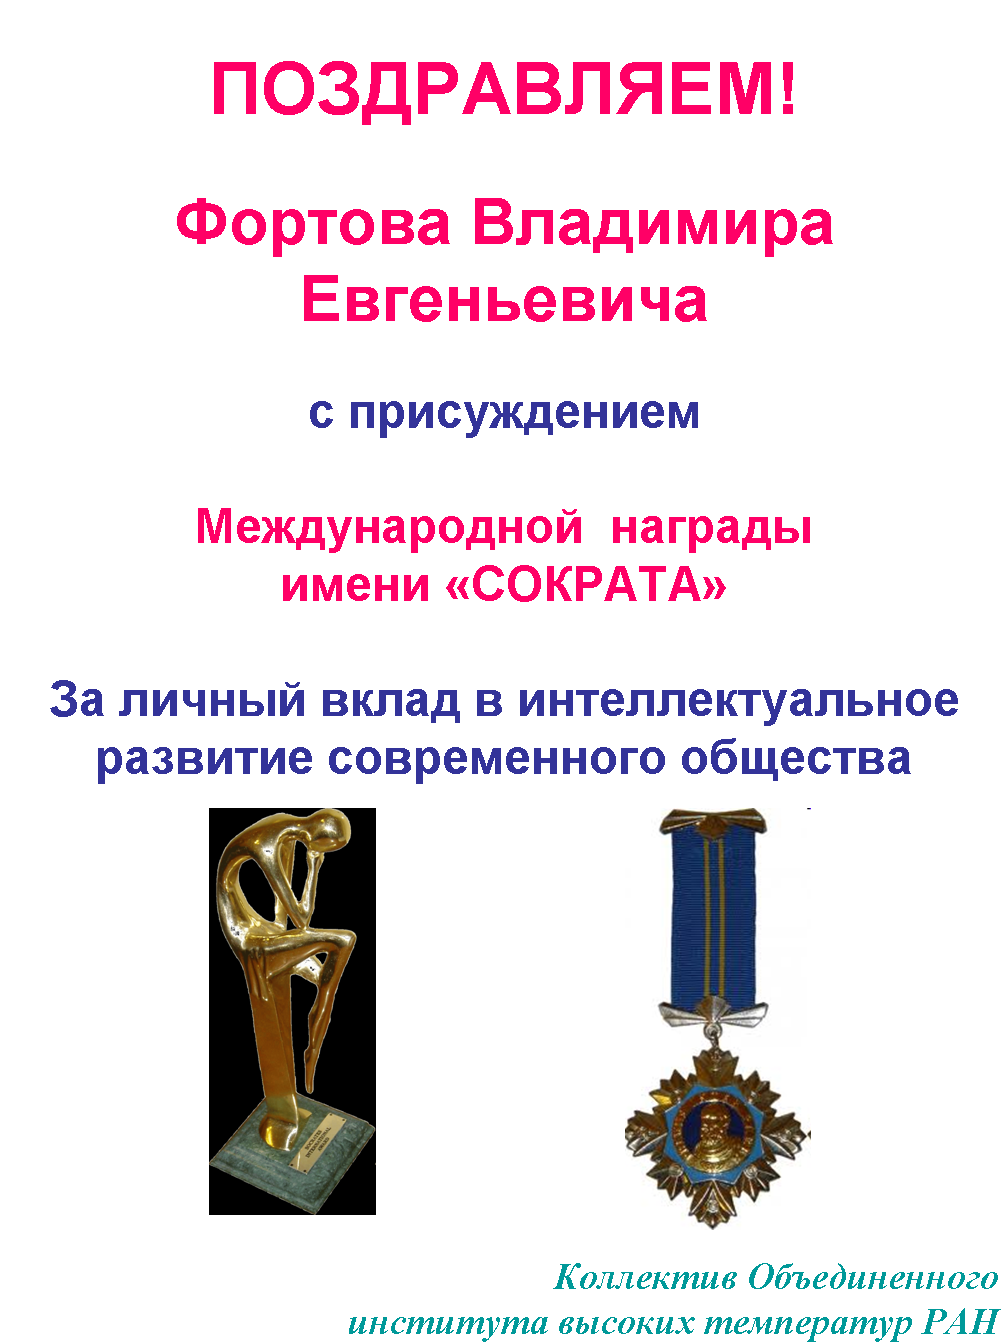 Всемирные награды